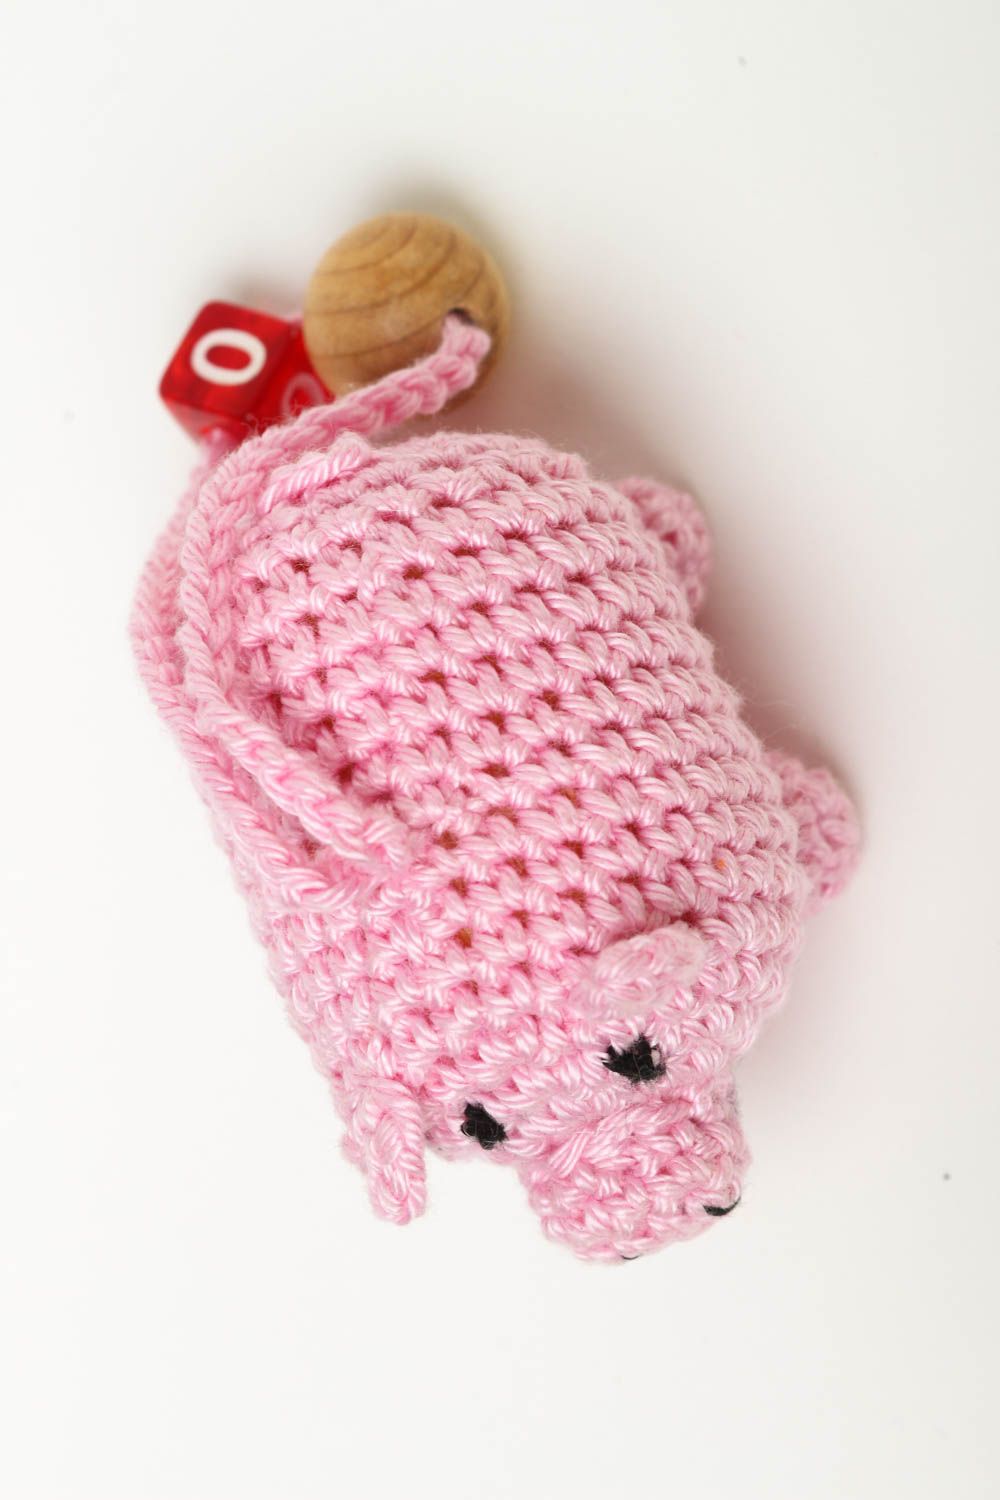 Rattle toy for babies handmade crocheted soft toys nursery decor ideas photo 4